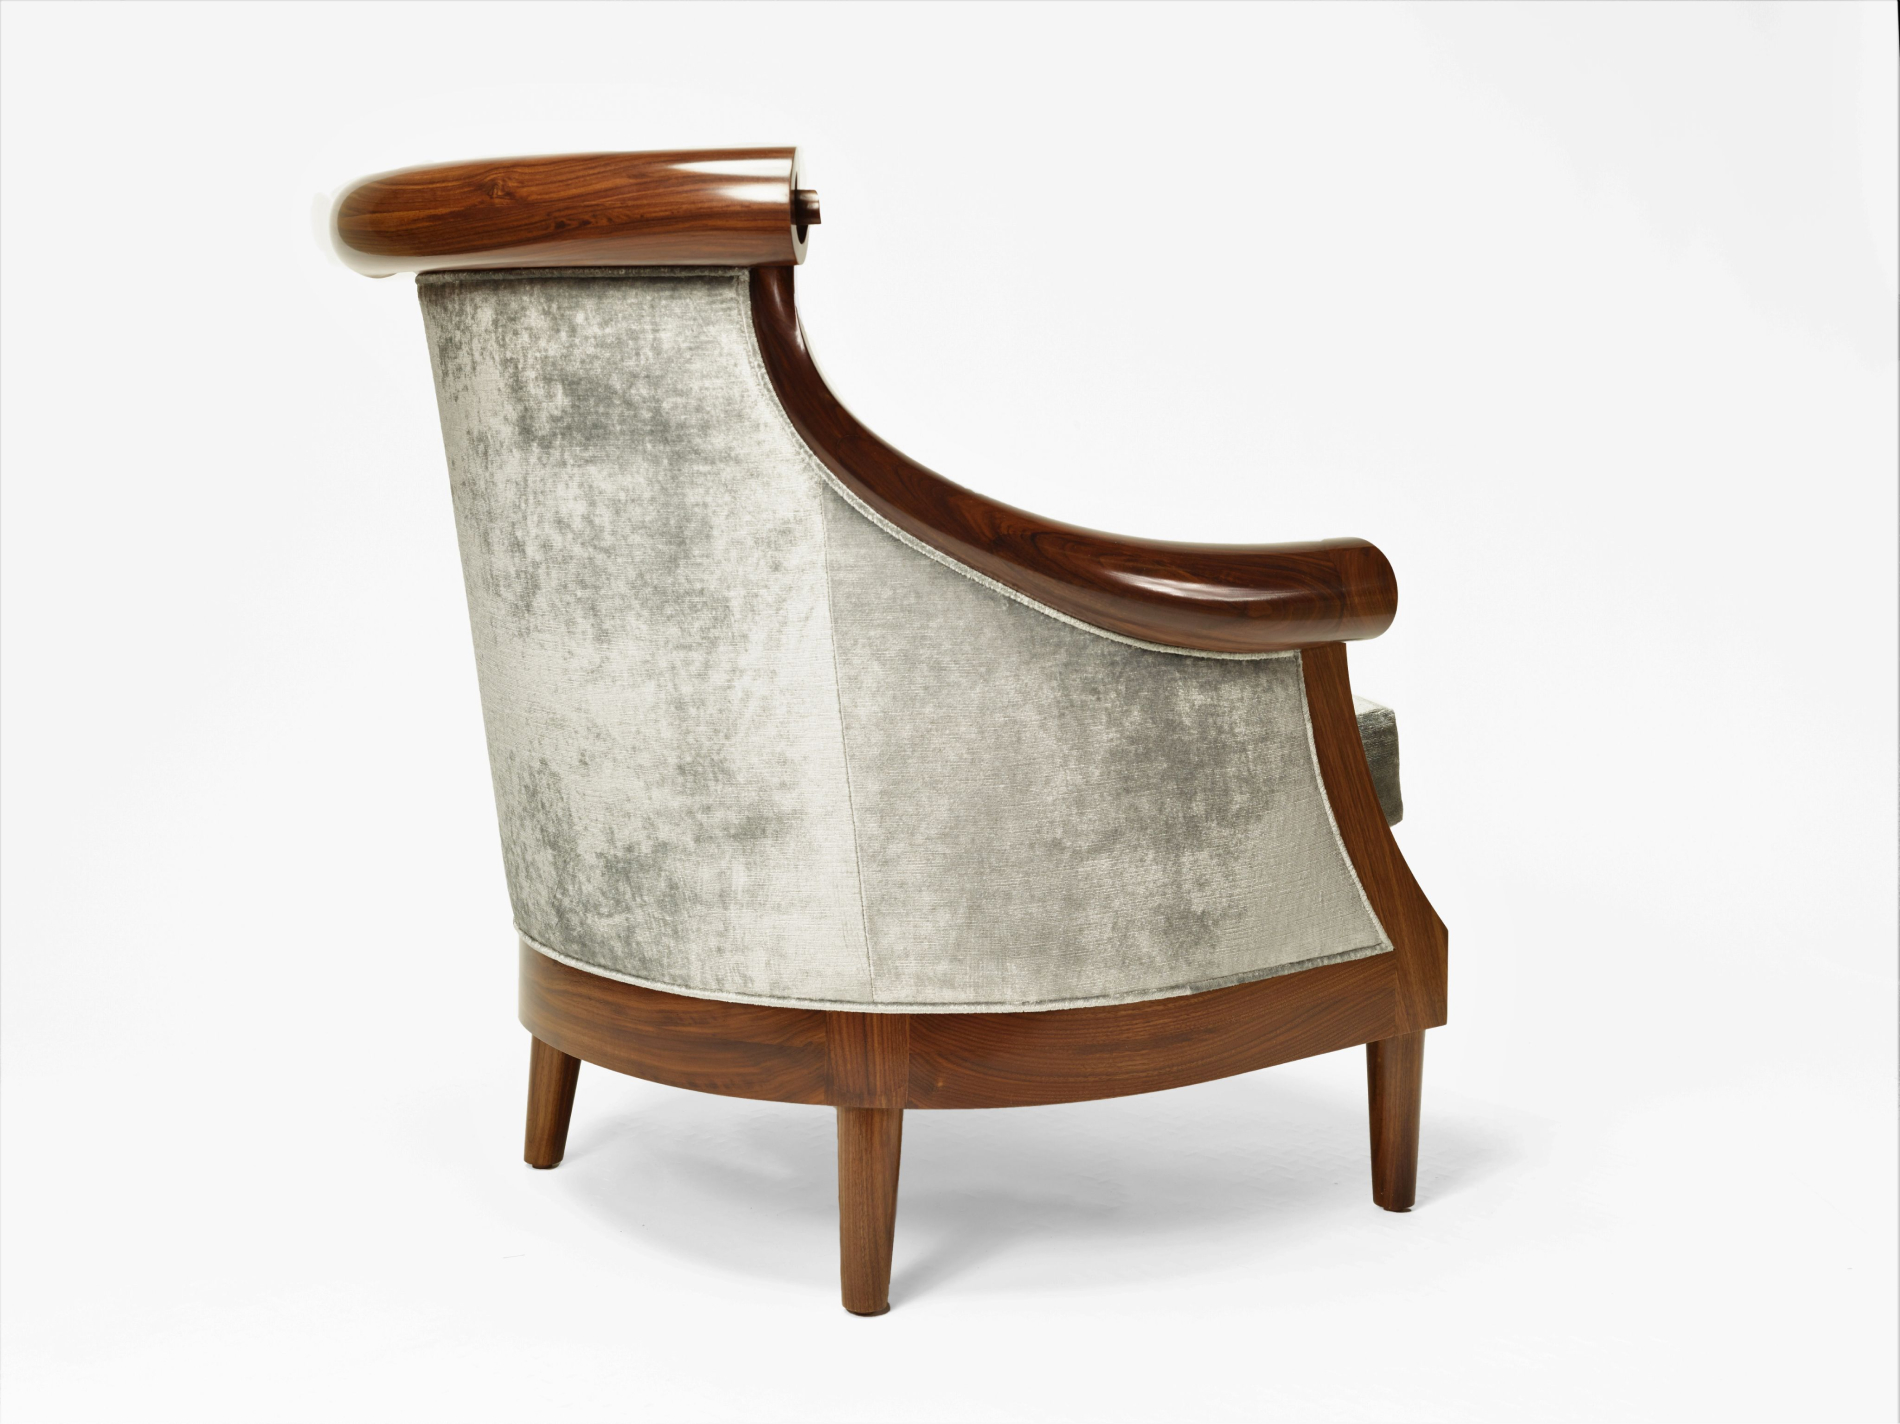 The Heatley Lounge Chair  — SOLO by Allan Switzer